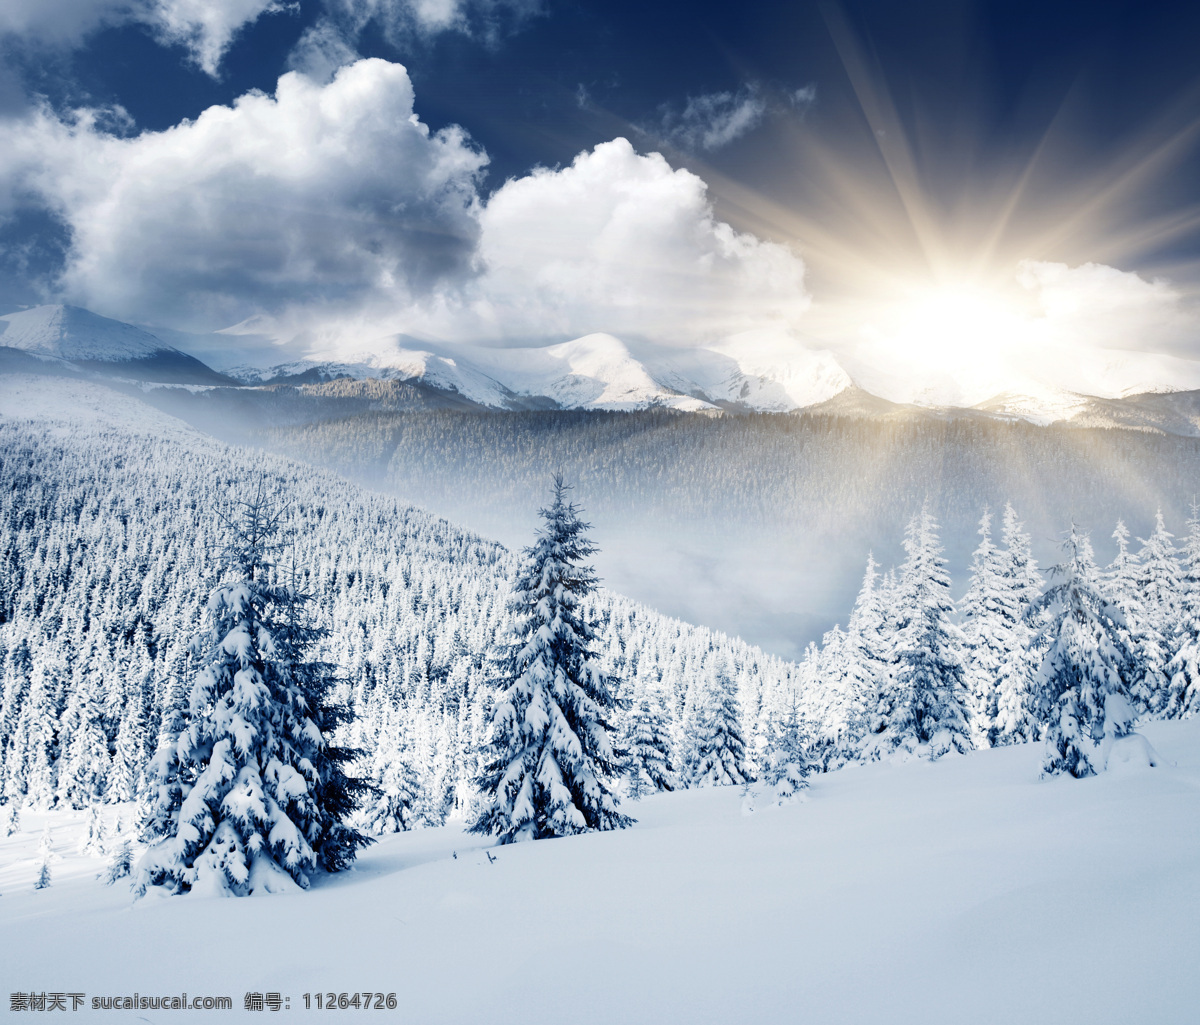 冬天 积雪 美景 冬季 雪景 美丽风景 景色 雪地 森林 树木 冬季景观 山水风景 风景图片